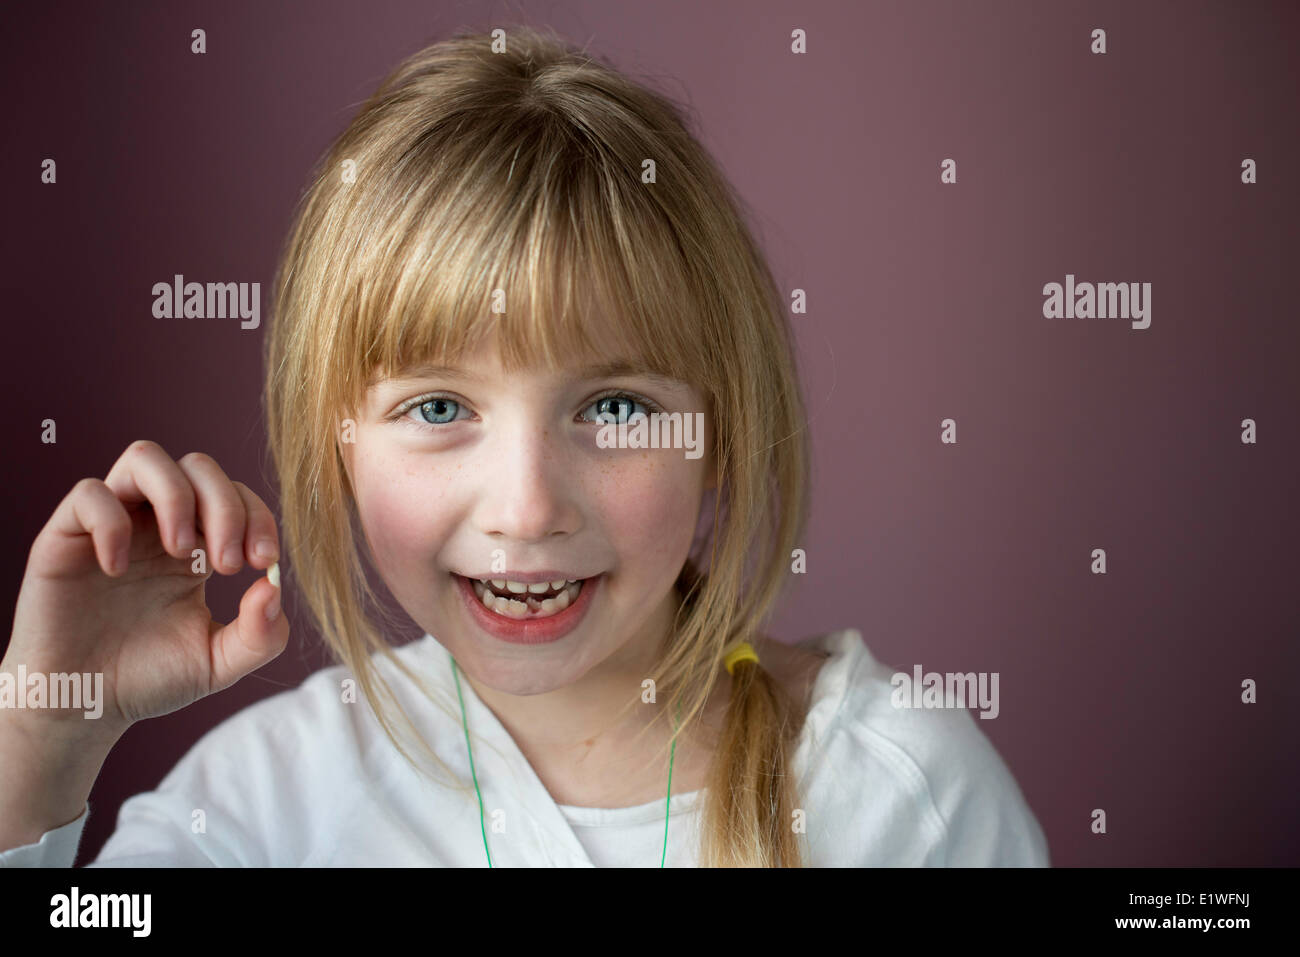 Ritratto di sorridente bambina che mostra il suo primo dente allentato Foto Stock